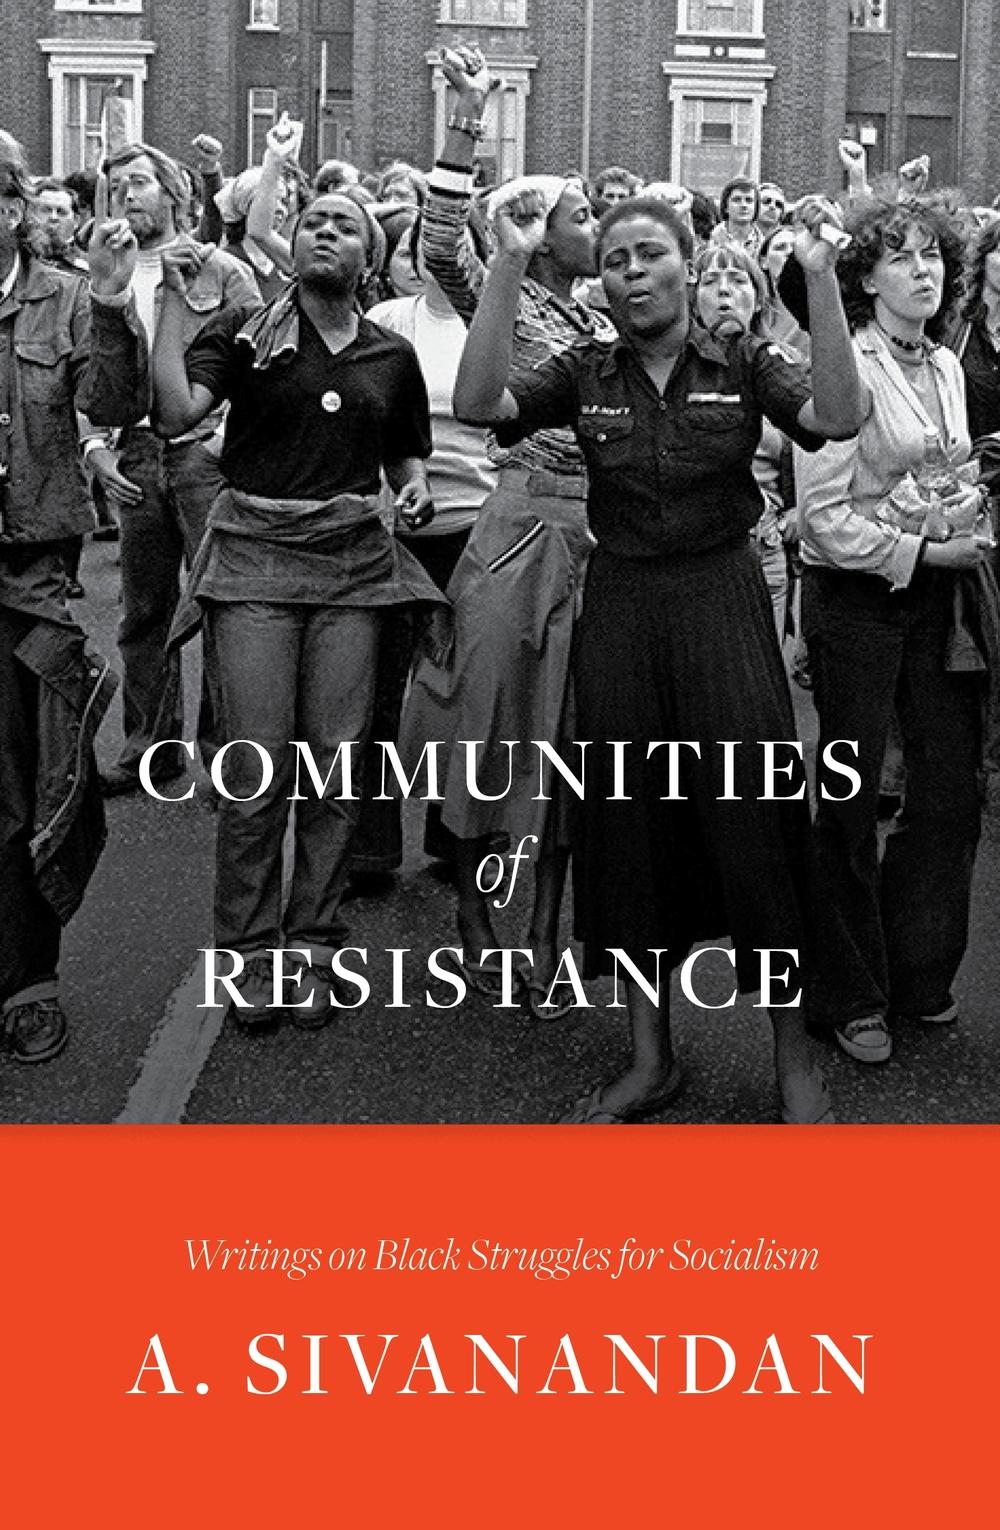 Communities of Resistance - Ambalavaner Sivanandan